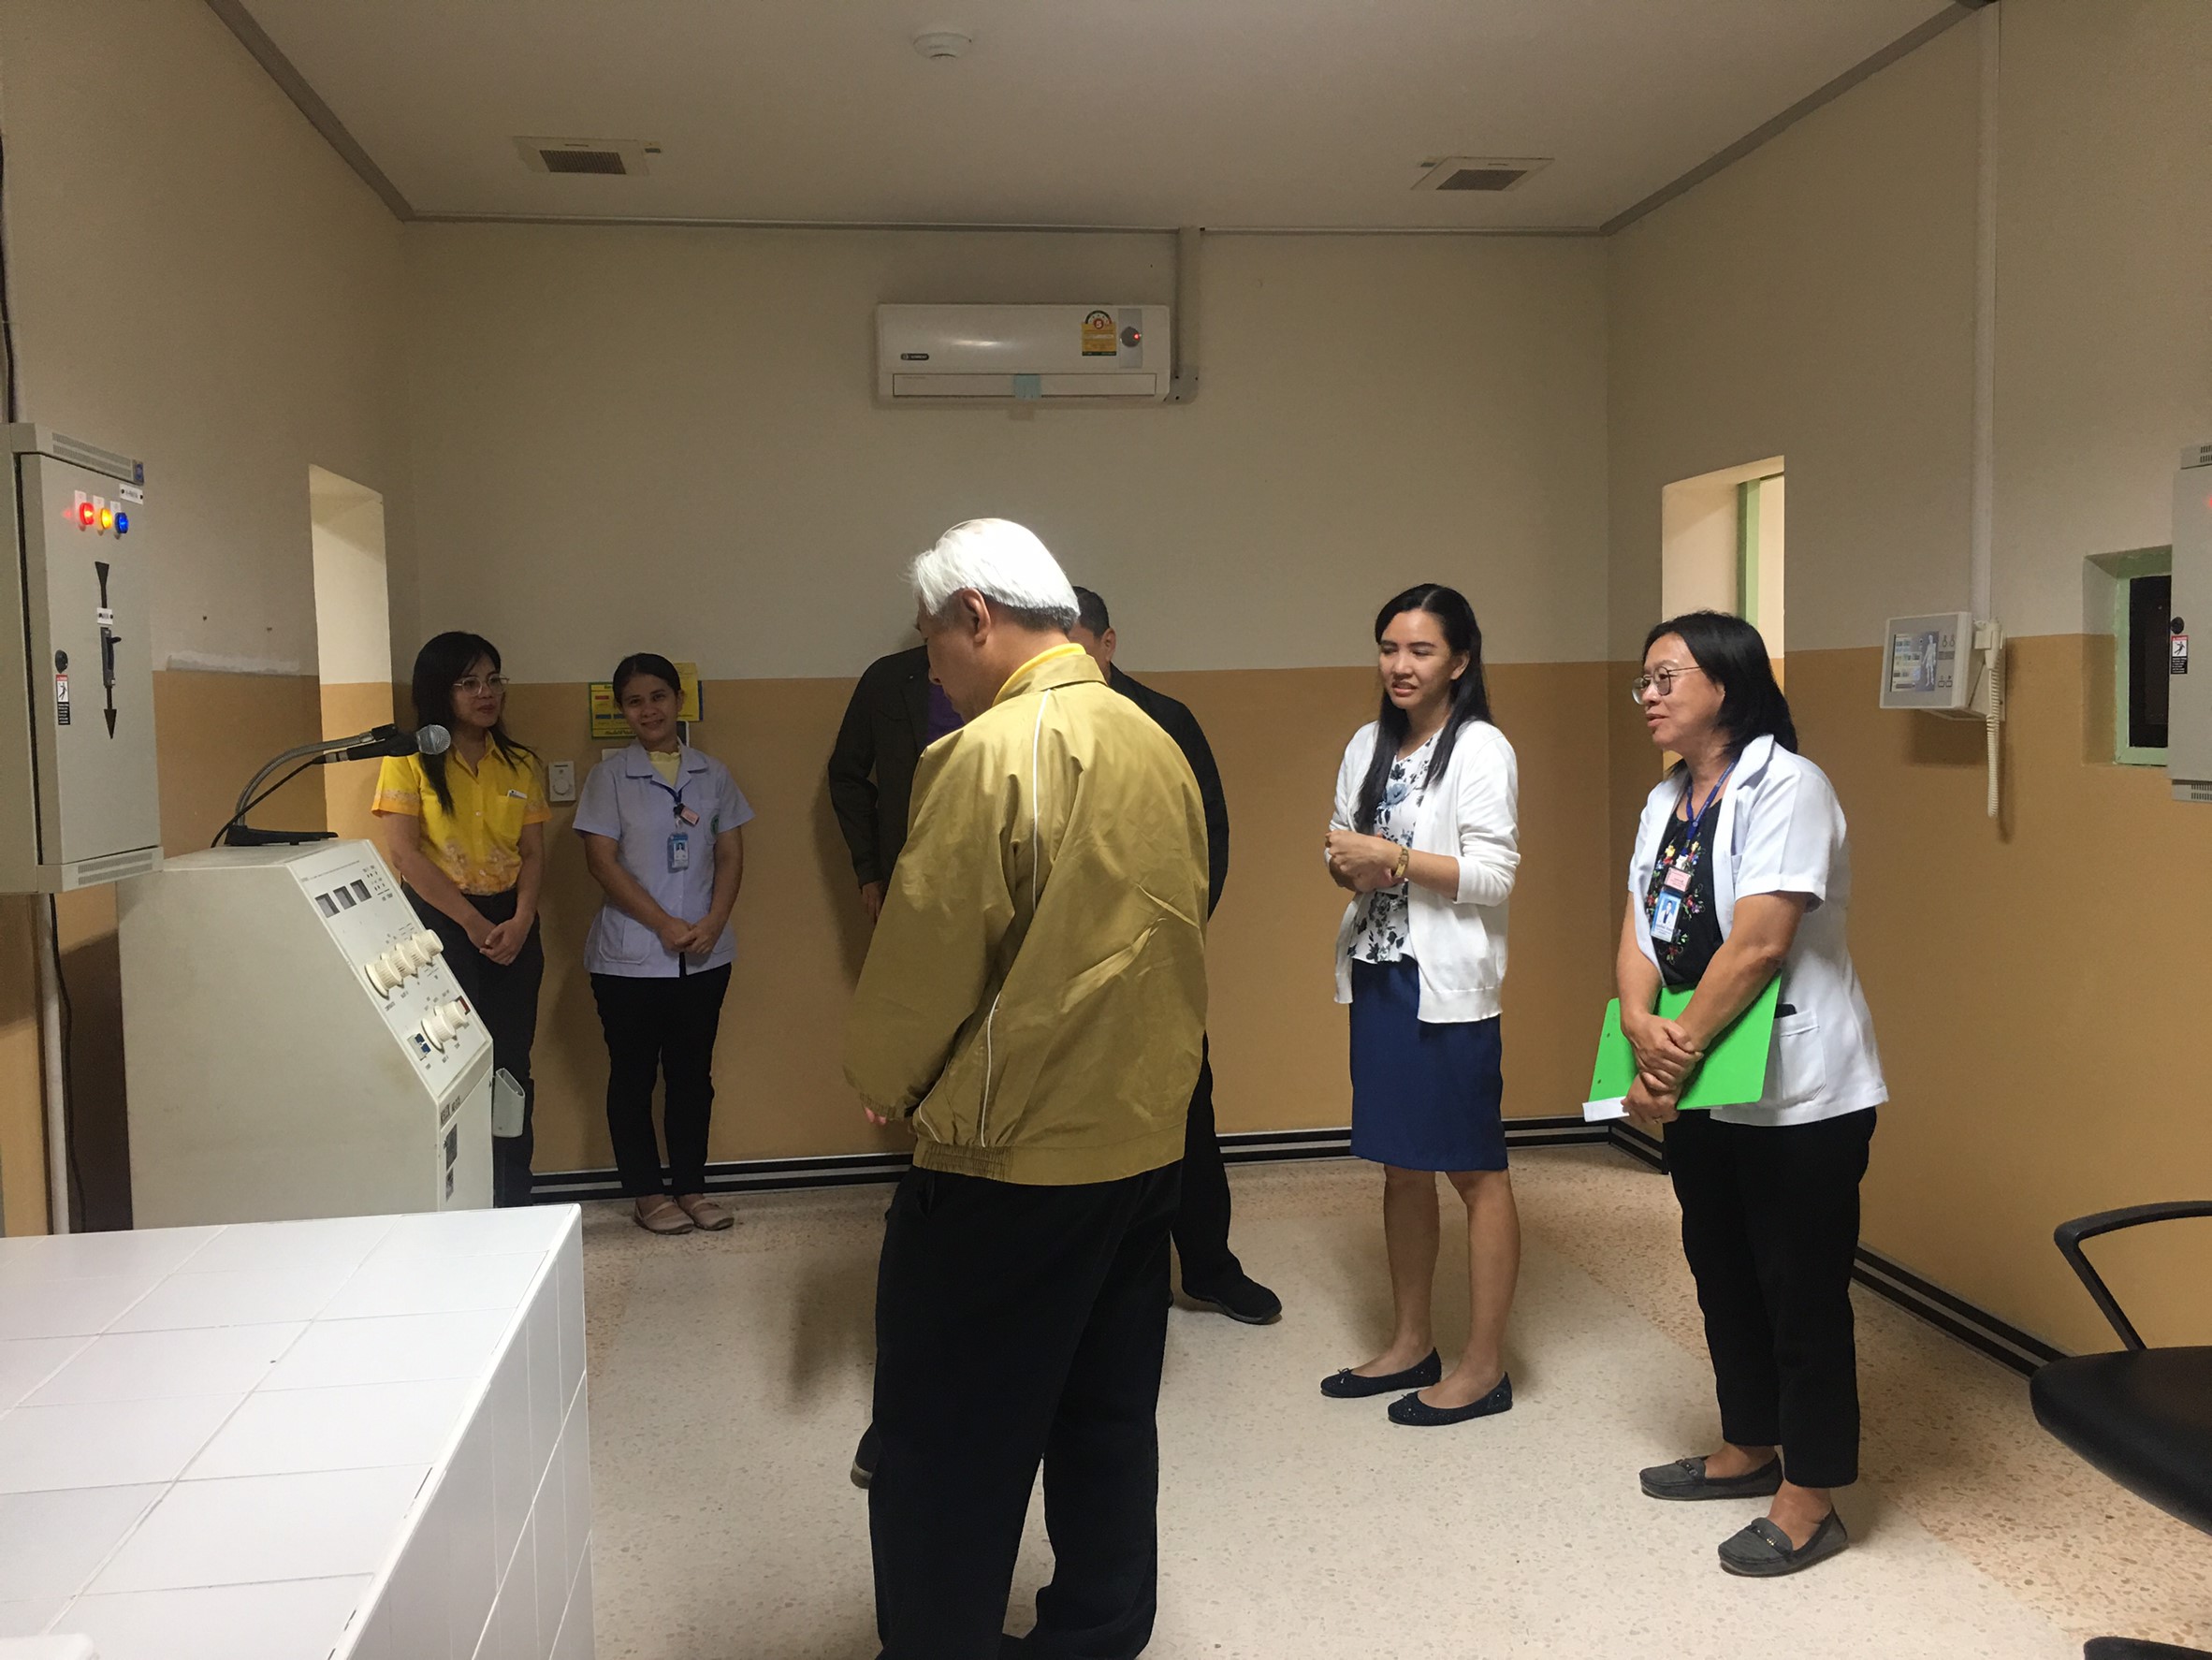 ประชุมวิชาการร่วมกับรังสีการแพทย์แห่งประเทศไทย ครั้งที่17 27-29 พ.ย. - พร้อมเข้าเยี่ยมและให้กำลังใจหน่วยงานรังสีวิทยาในพื้นที่จังหวัดอุบลราชธานีระหว่างวันที่ 25-26 พฤศจิกายน 2562 73